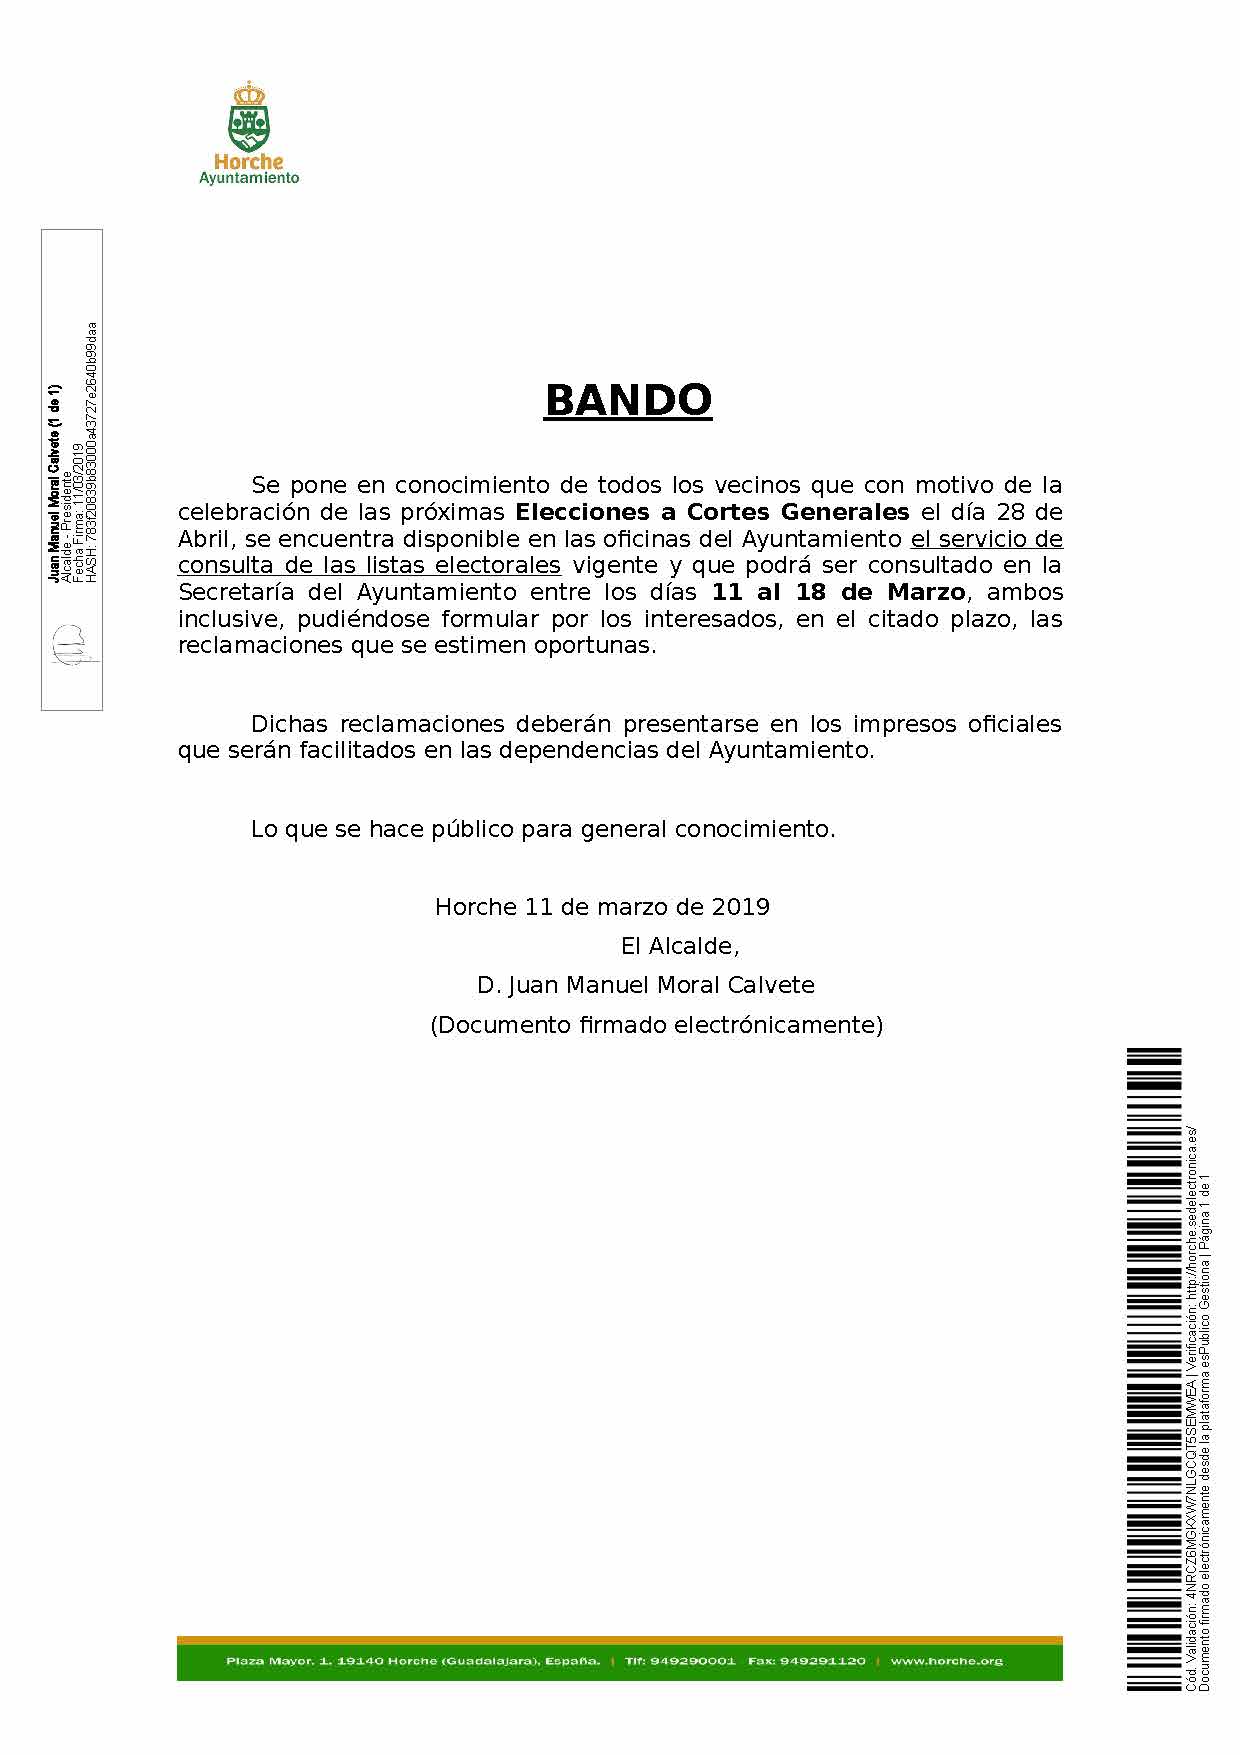 20190311_Bando_consulta_listas_electorales.jpg